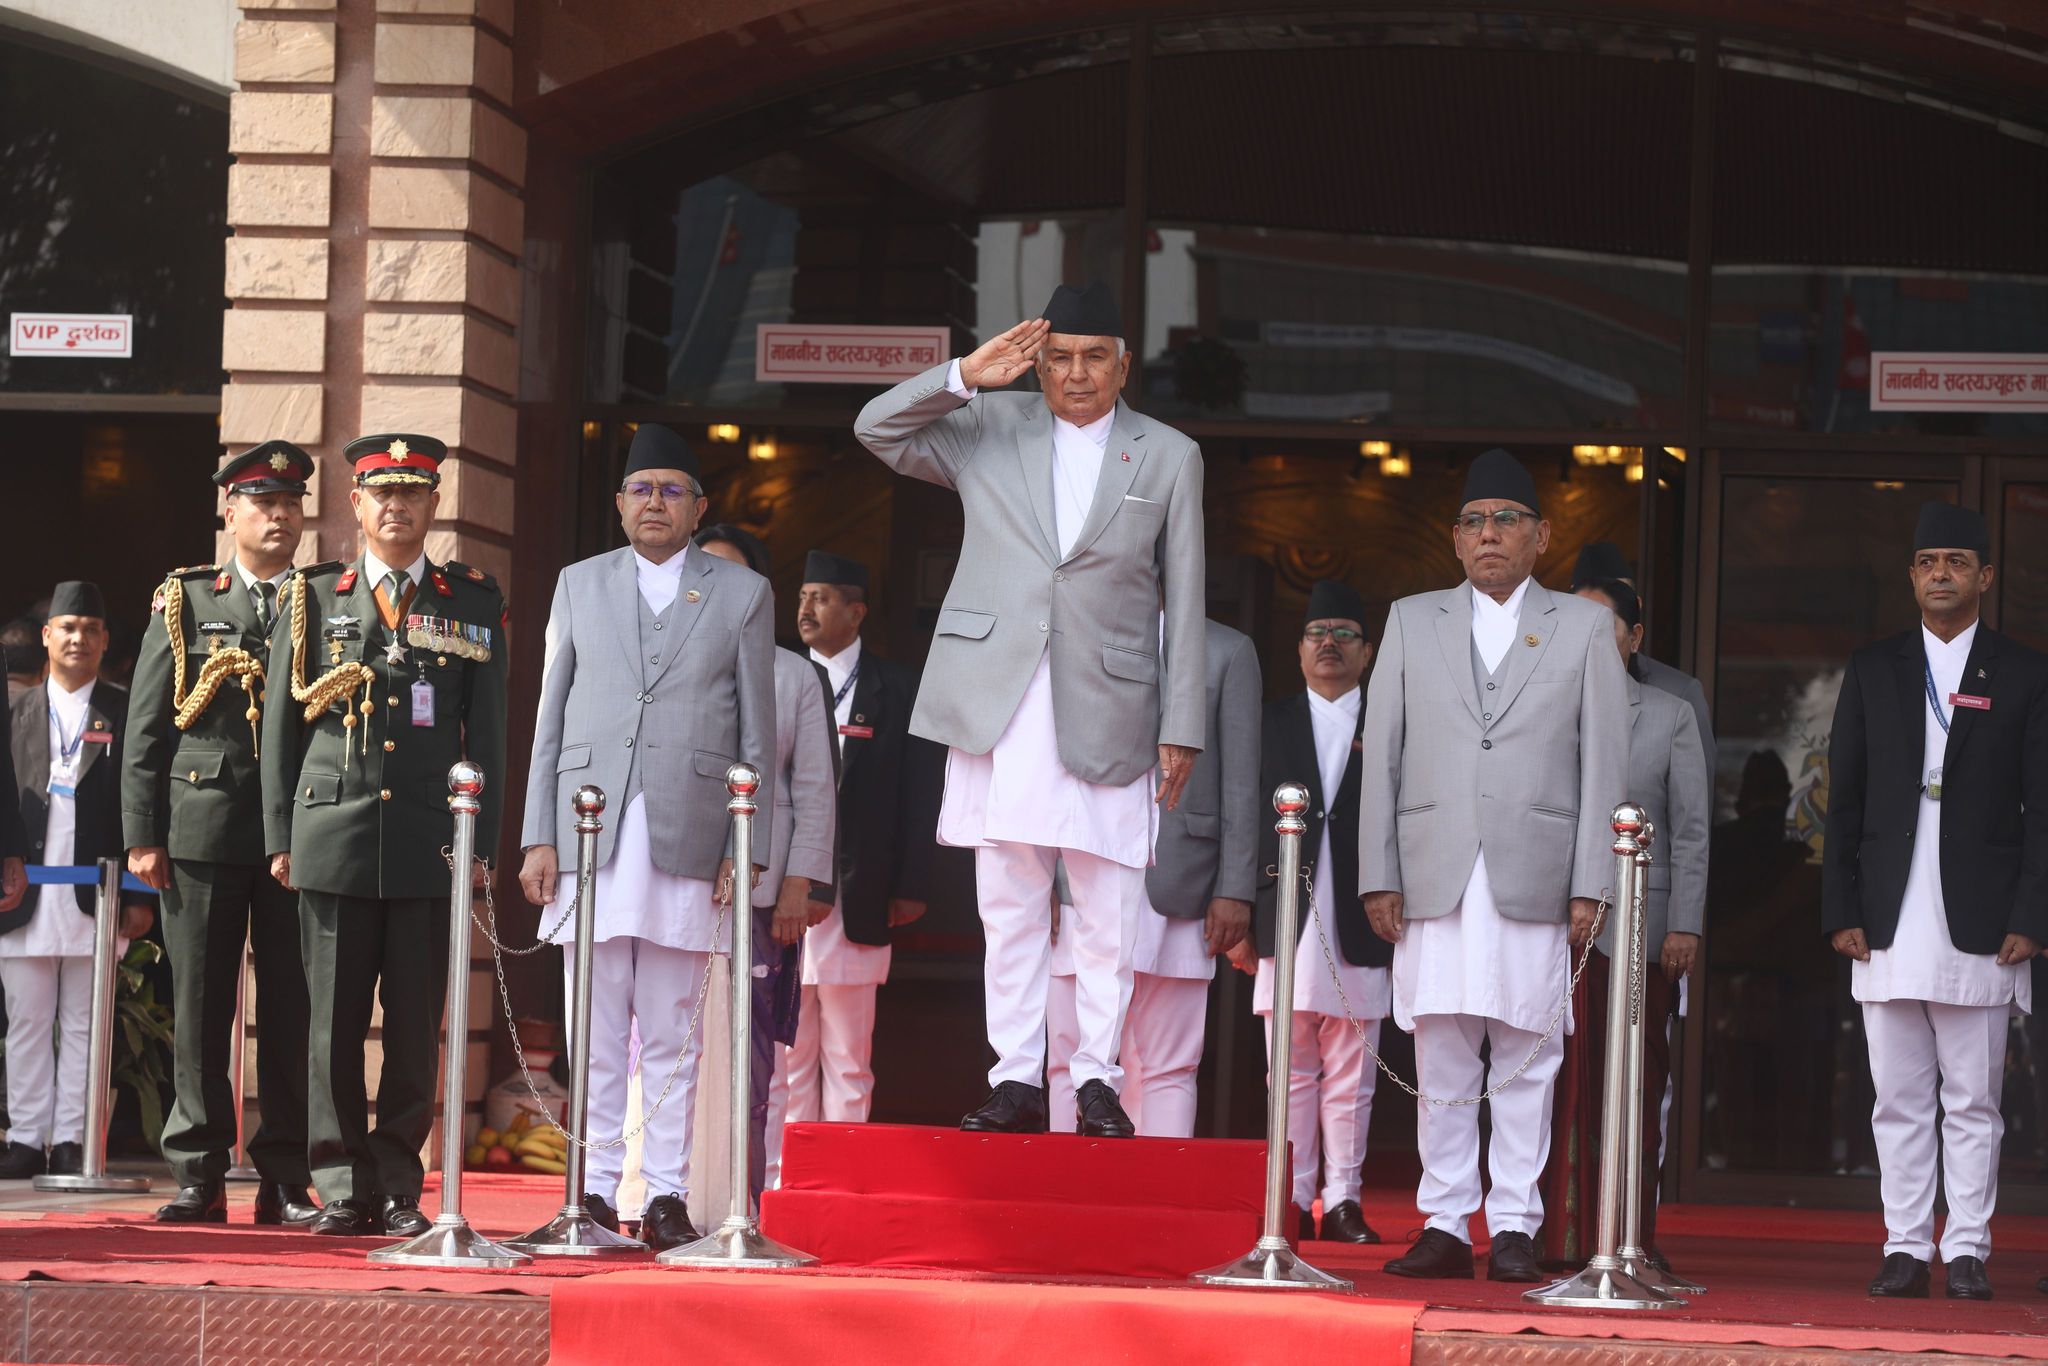 संसदमा राष्ट्रपति रामचन्द्र पौडेल पुग्दा जे देखियो… (फोटो फिचर)